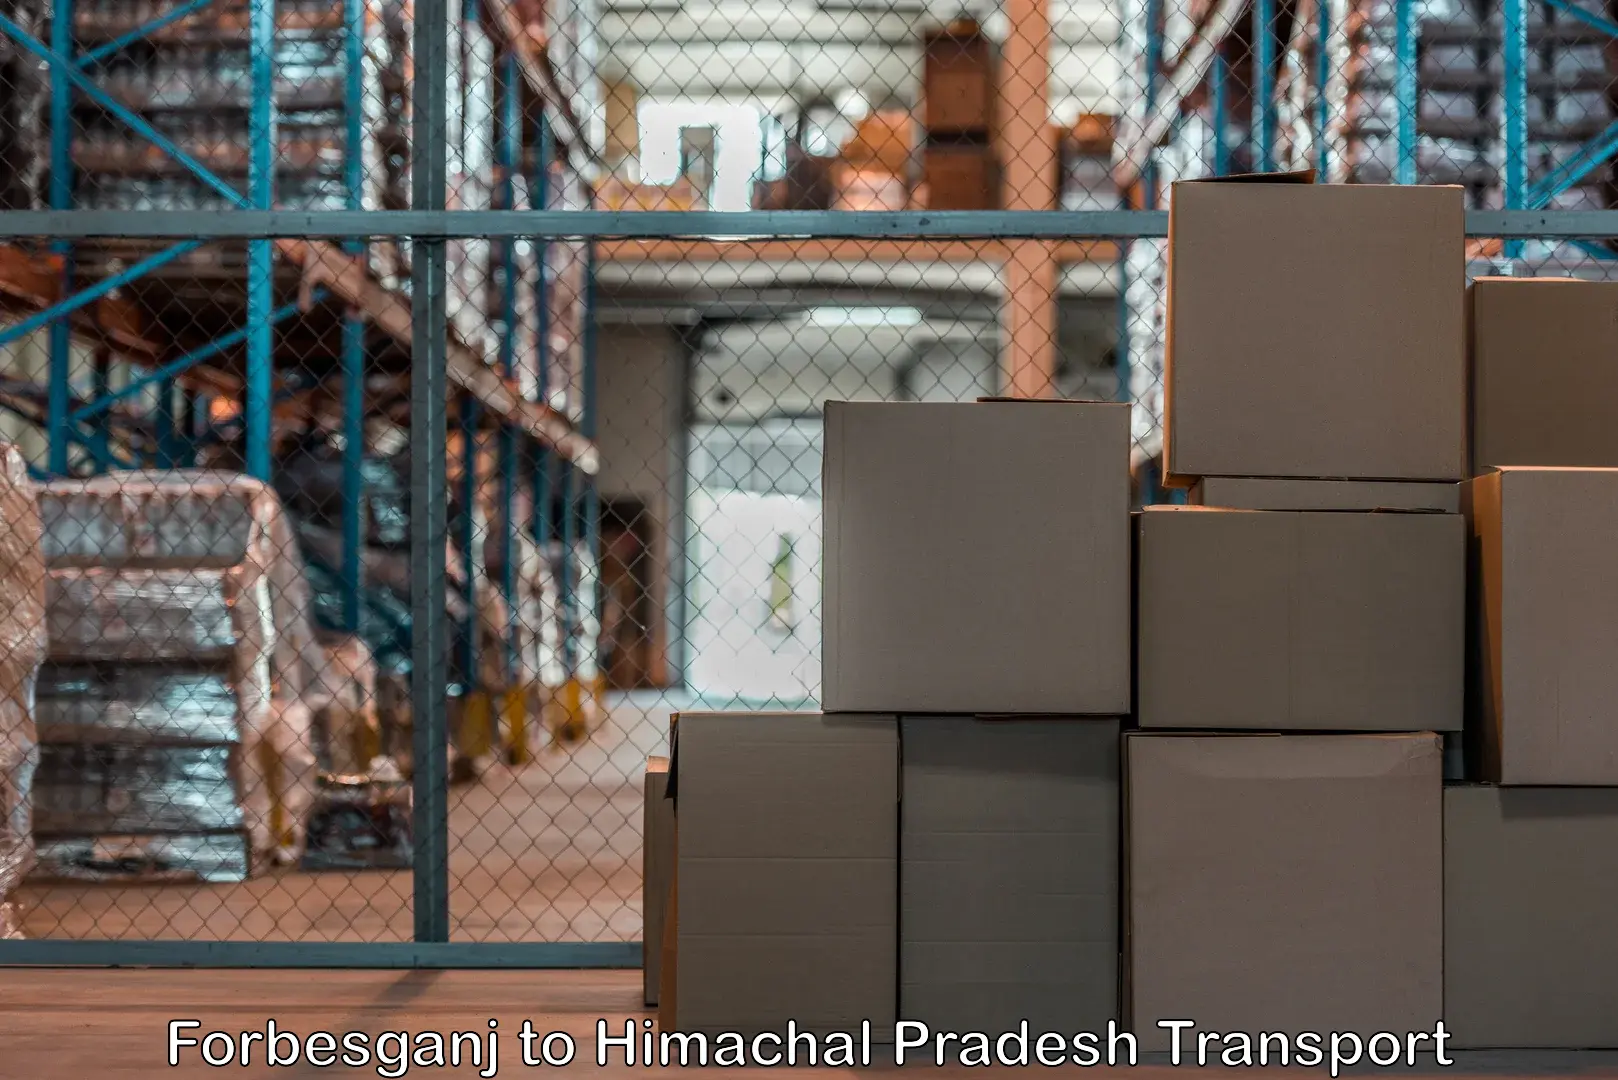 Daily parcel service transport in Forbesganj to Bilaspur Himachal Pradesh